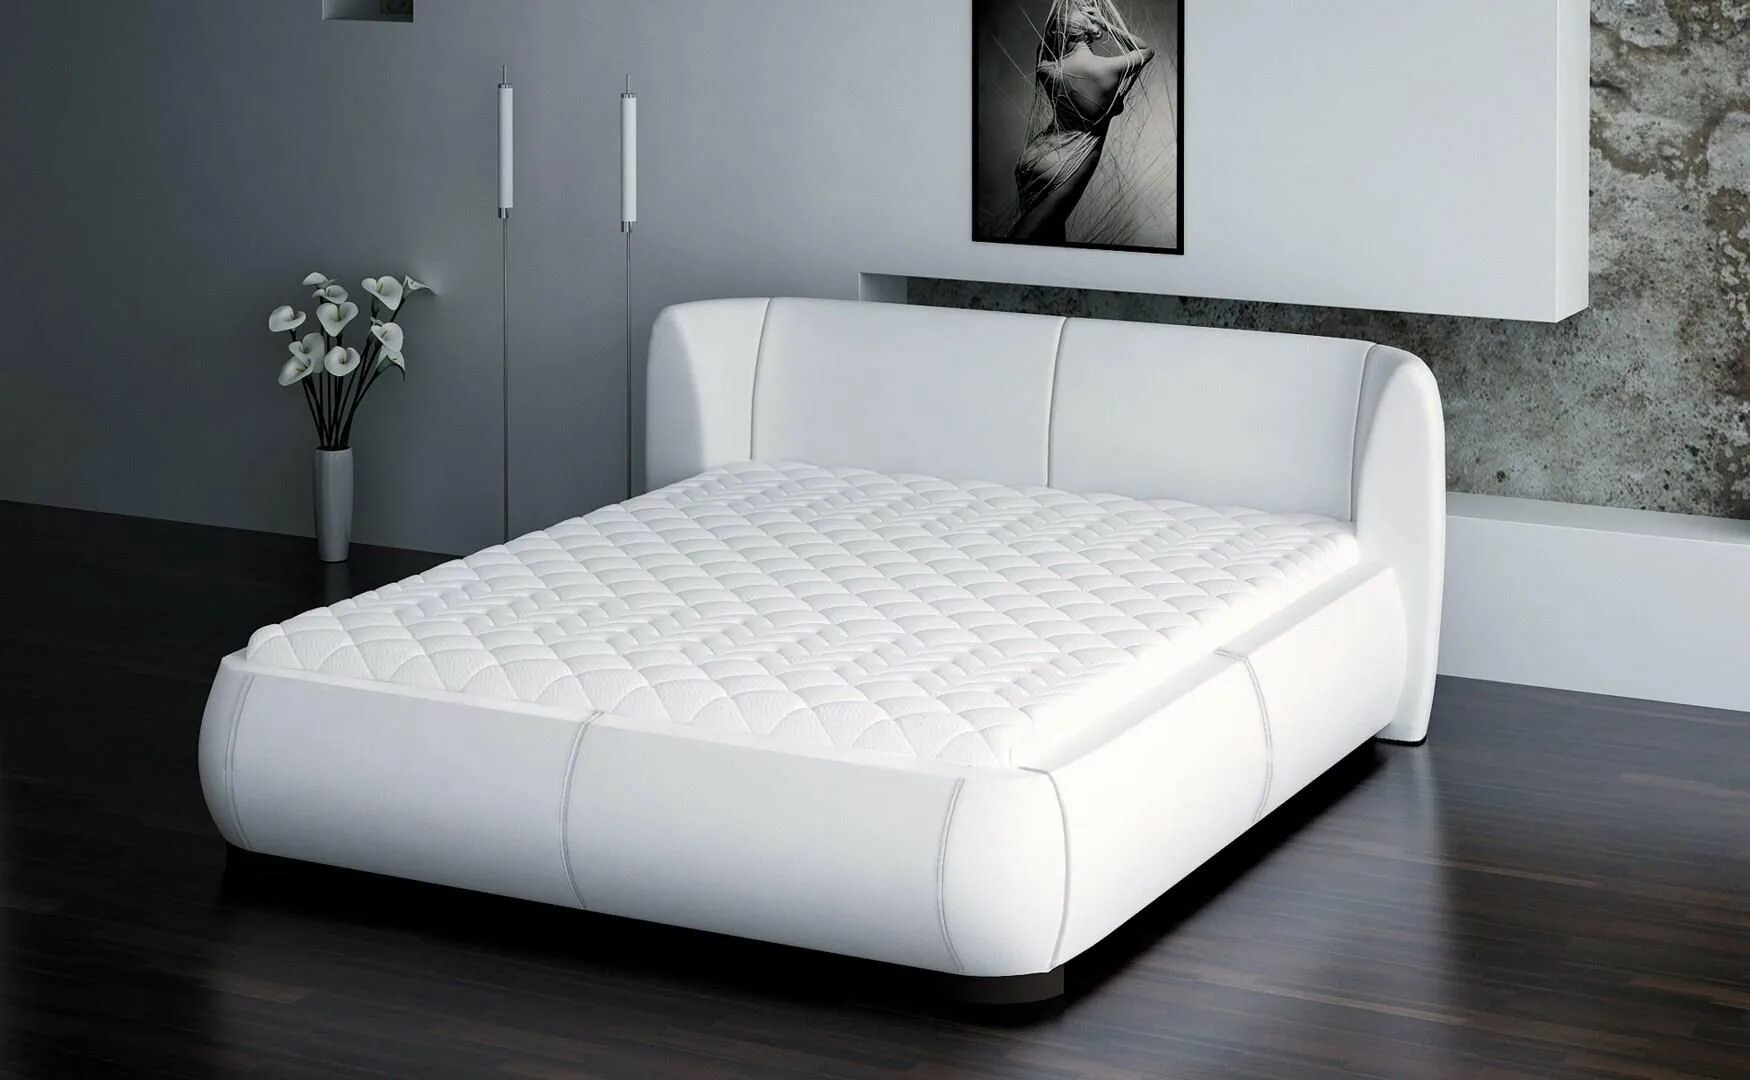 Кровать Ivona 140x200. Кровать двуспальная с мягкими бортами по периметру. Кровать с мягкими бортами двуспальная. Кровать мягкая двуспальная. Мягкая кровать купить в спб